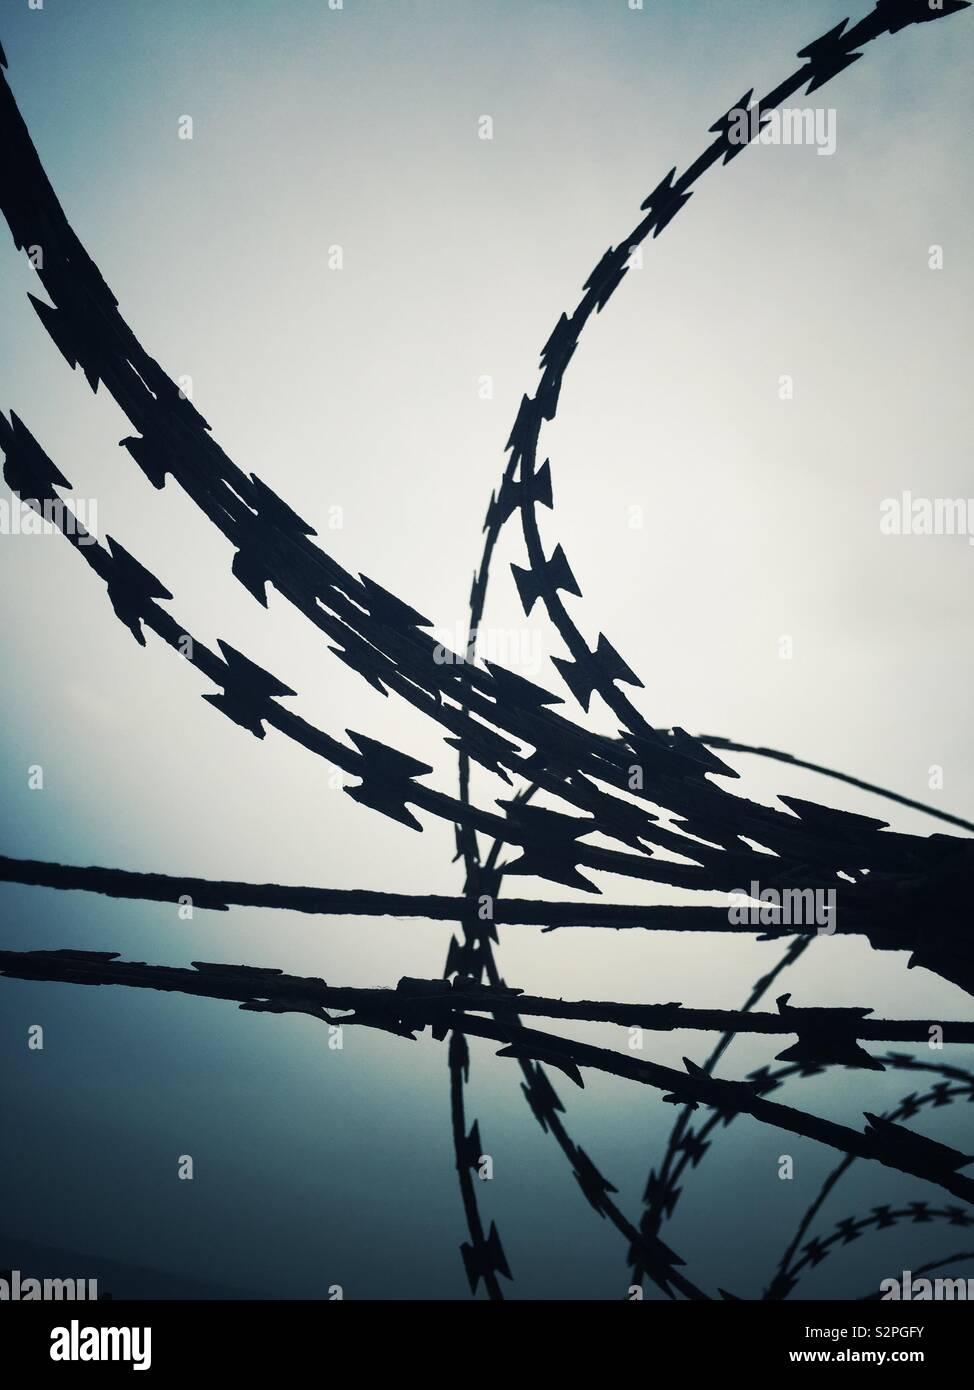 Tangled razor wire silhouette Stock Photo